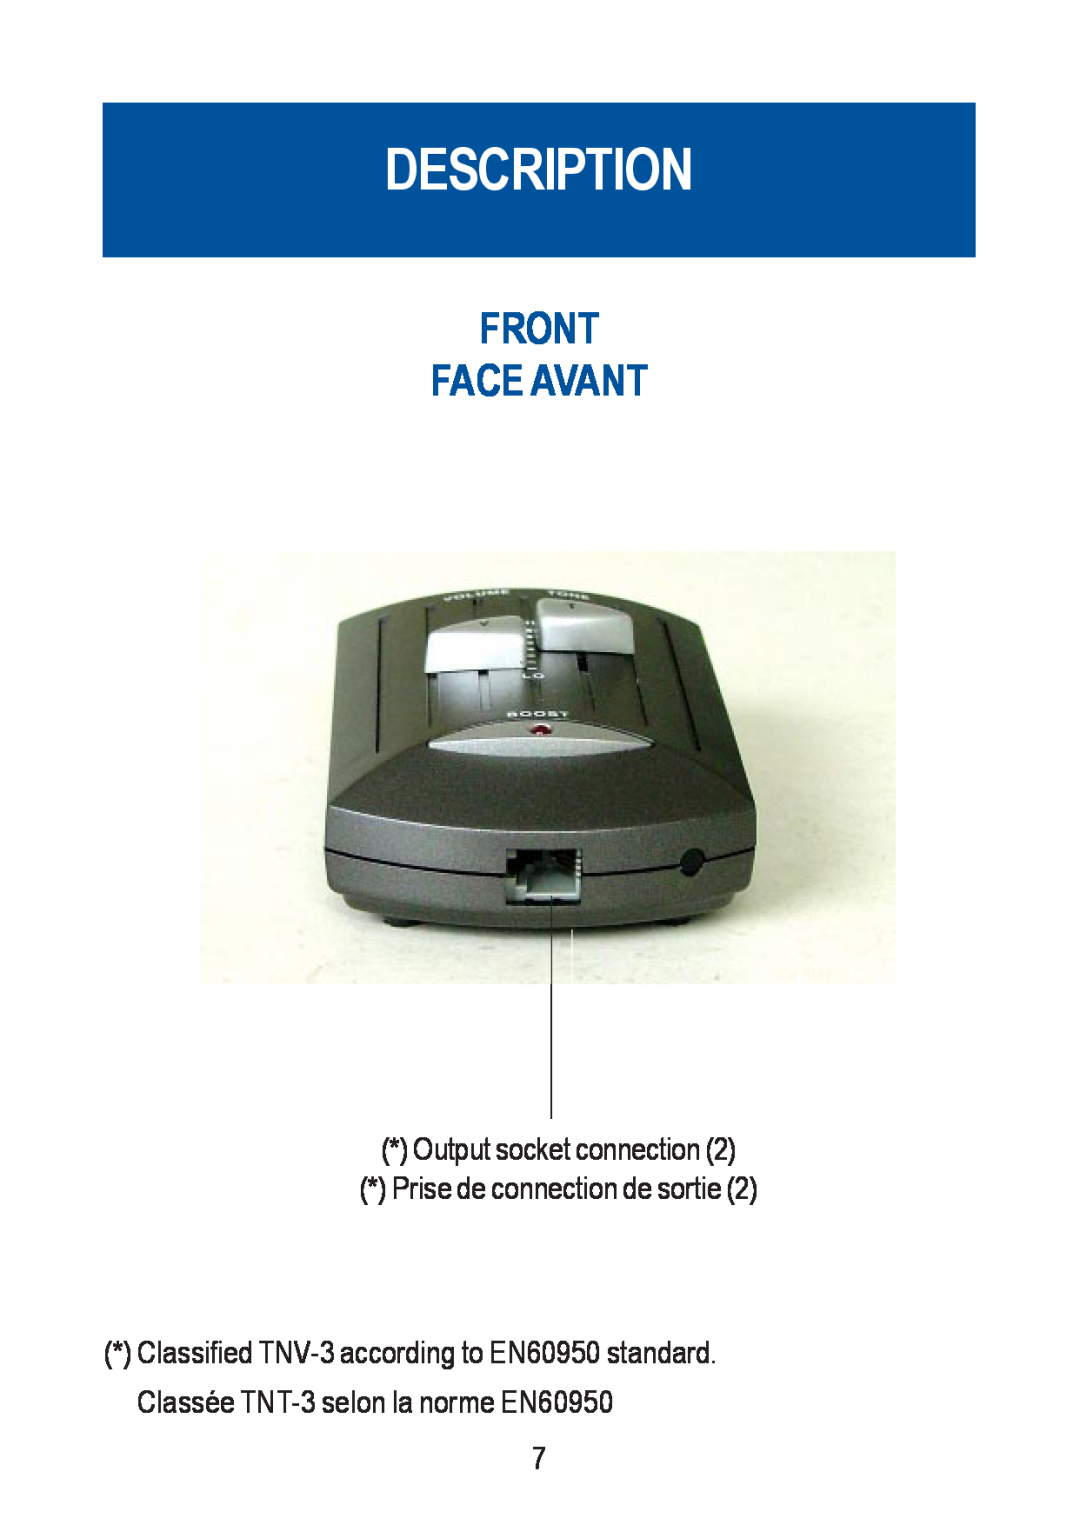 Geemarc CLA-40 VOX manual Front Face Avant, Description, Output socket connection, Prise de connection de sortie 